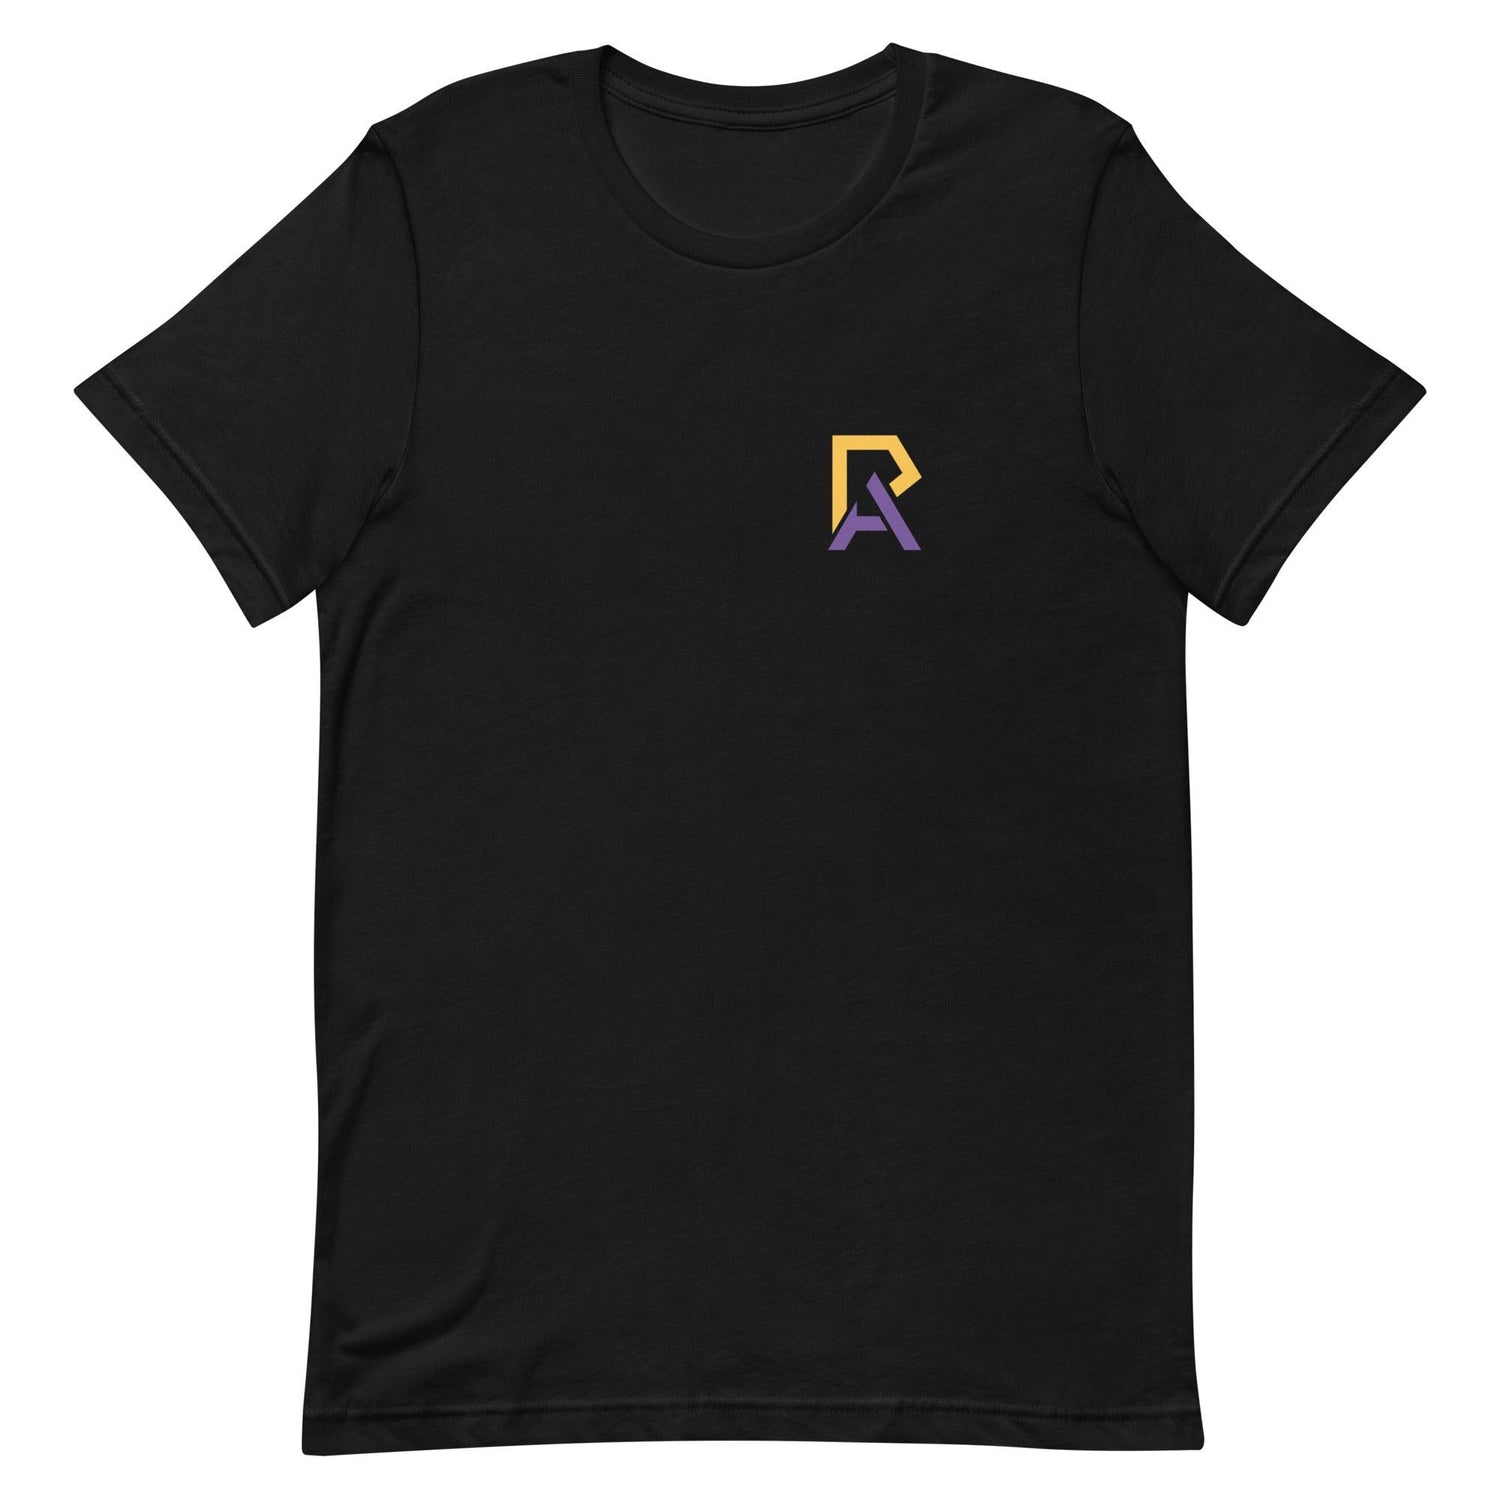 Andrea Riley "Elite" t-shirt - Fan Arch